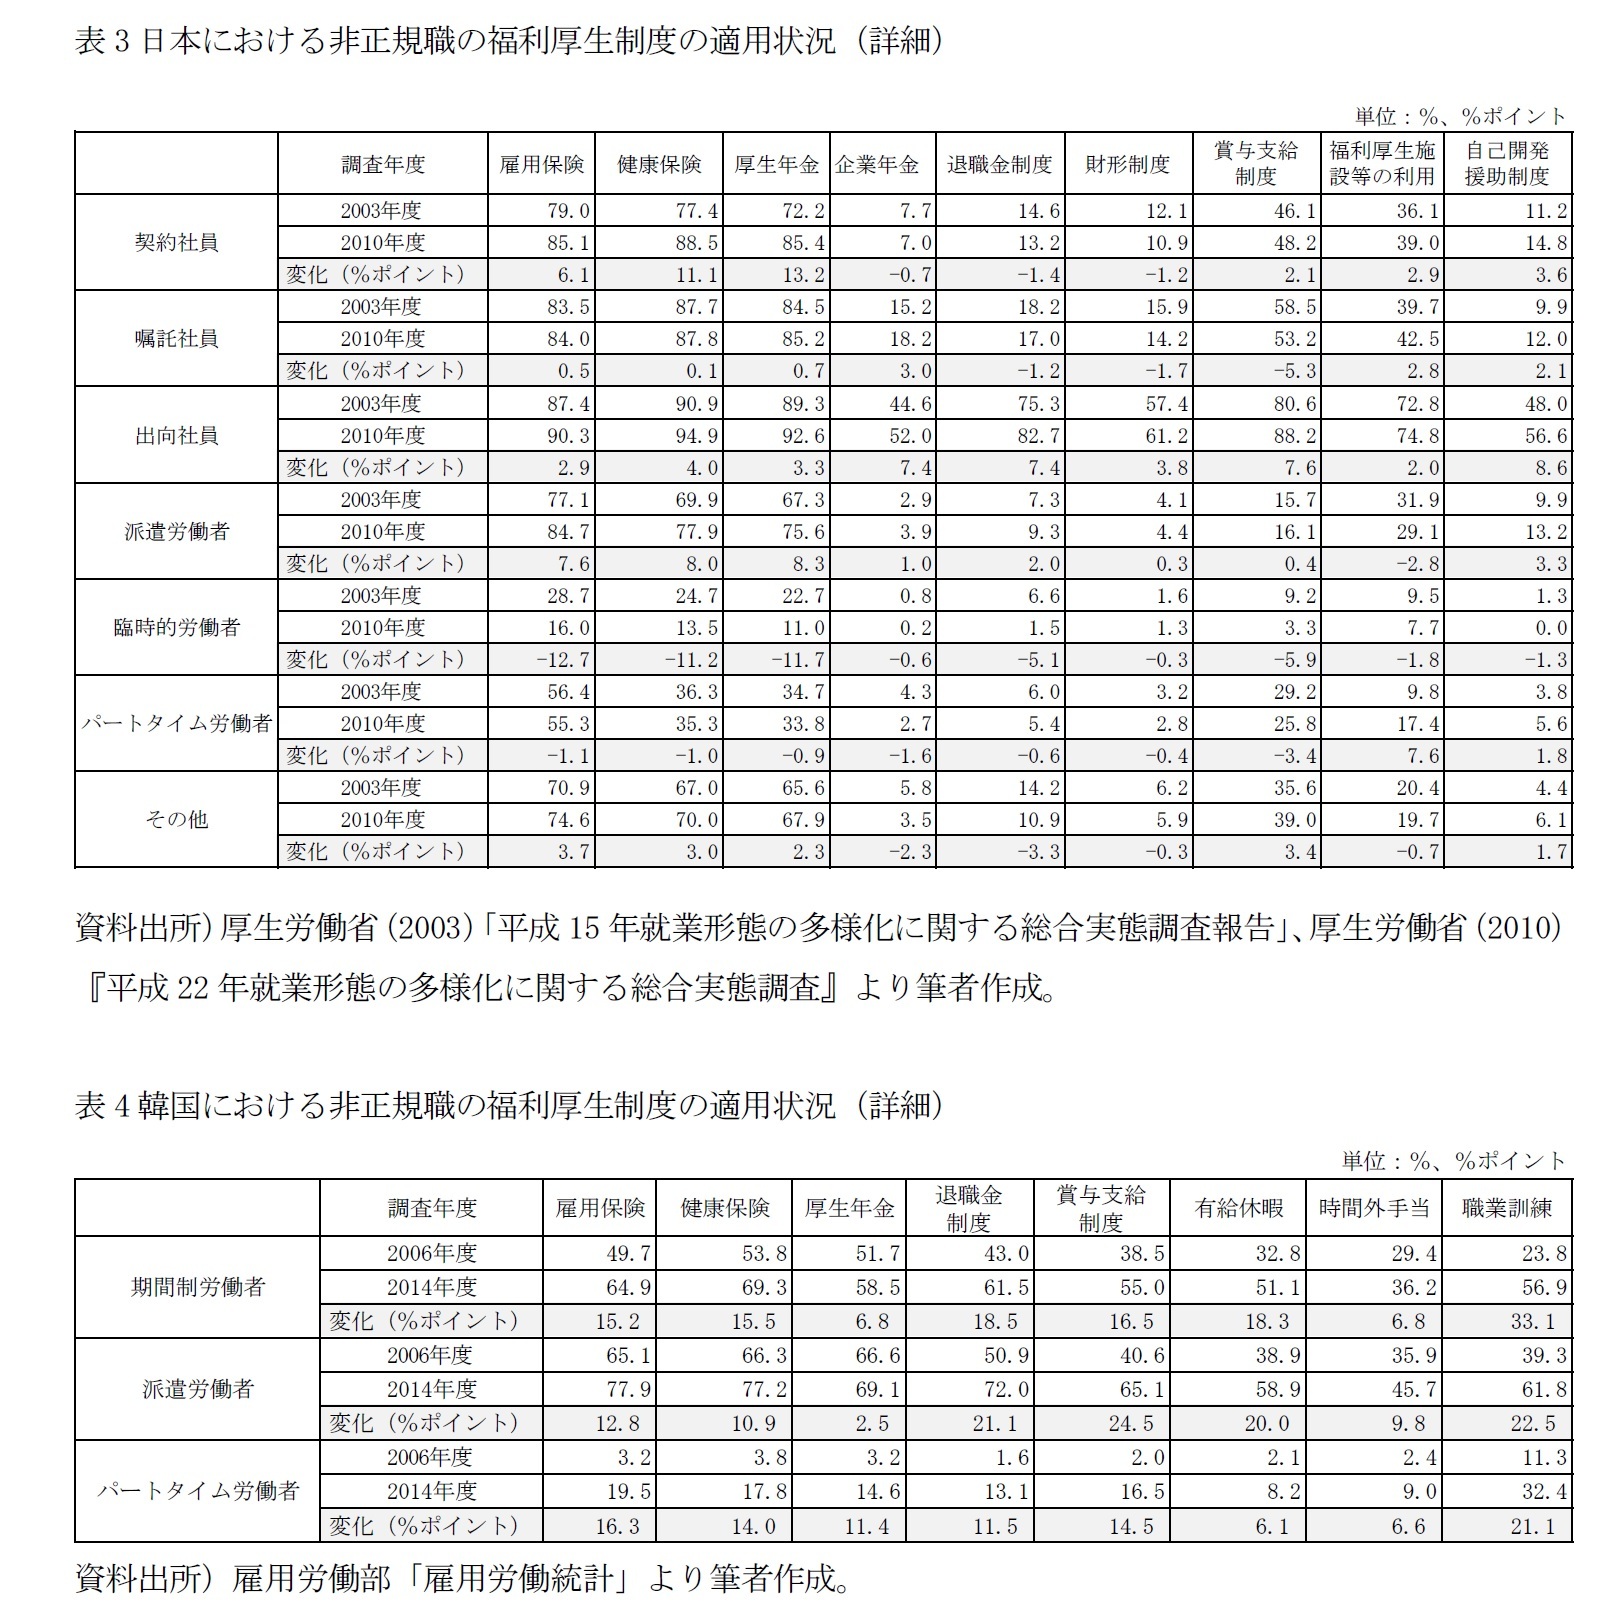 表3日本における非正規職の福利厚生制度の適用状況（詳細）/表4韓国における非正規職の福利厚生制度の適用状況（詳細）